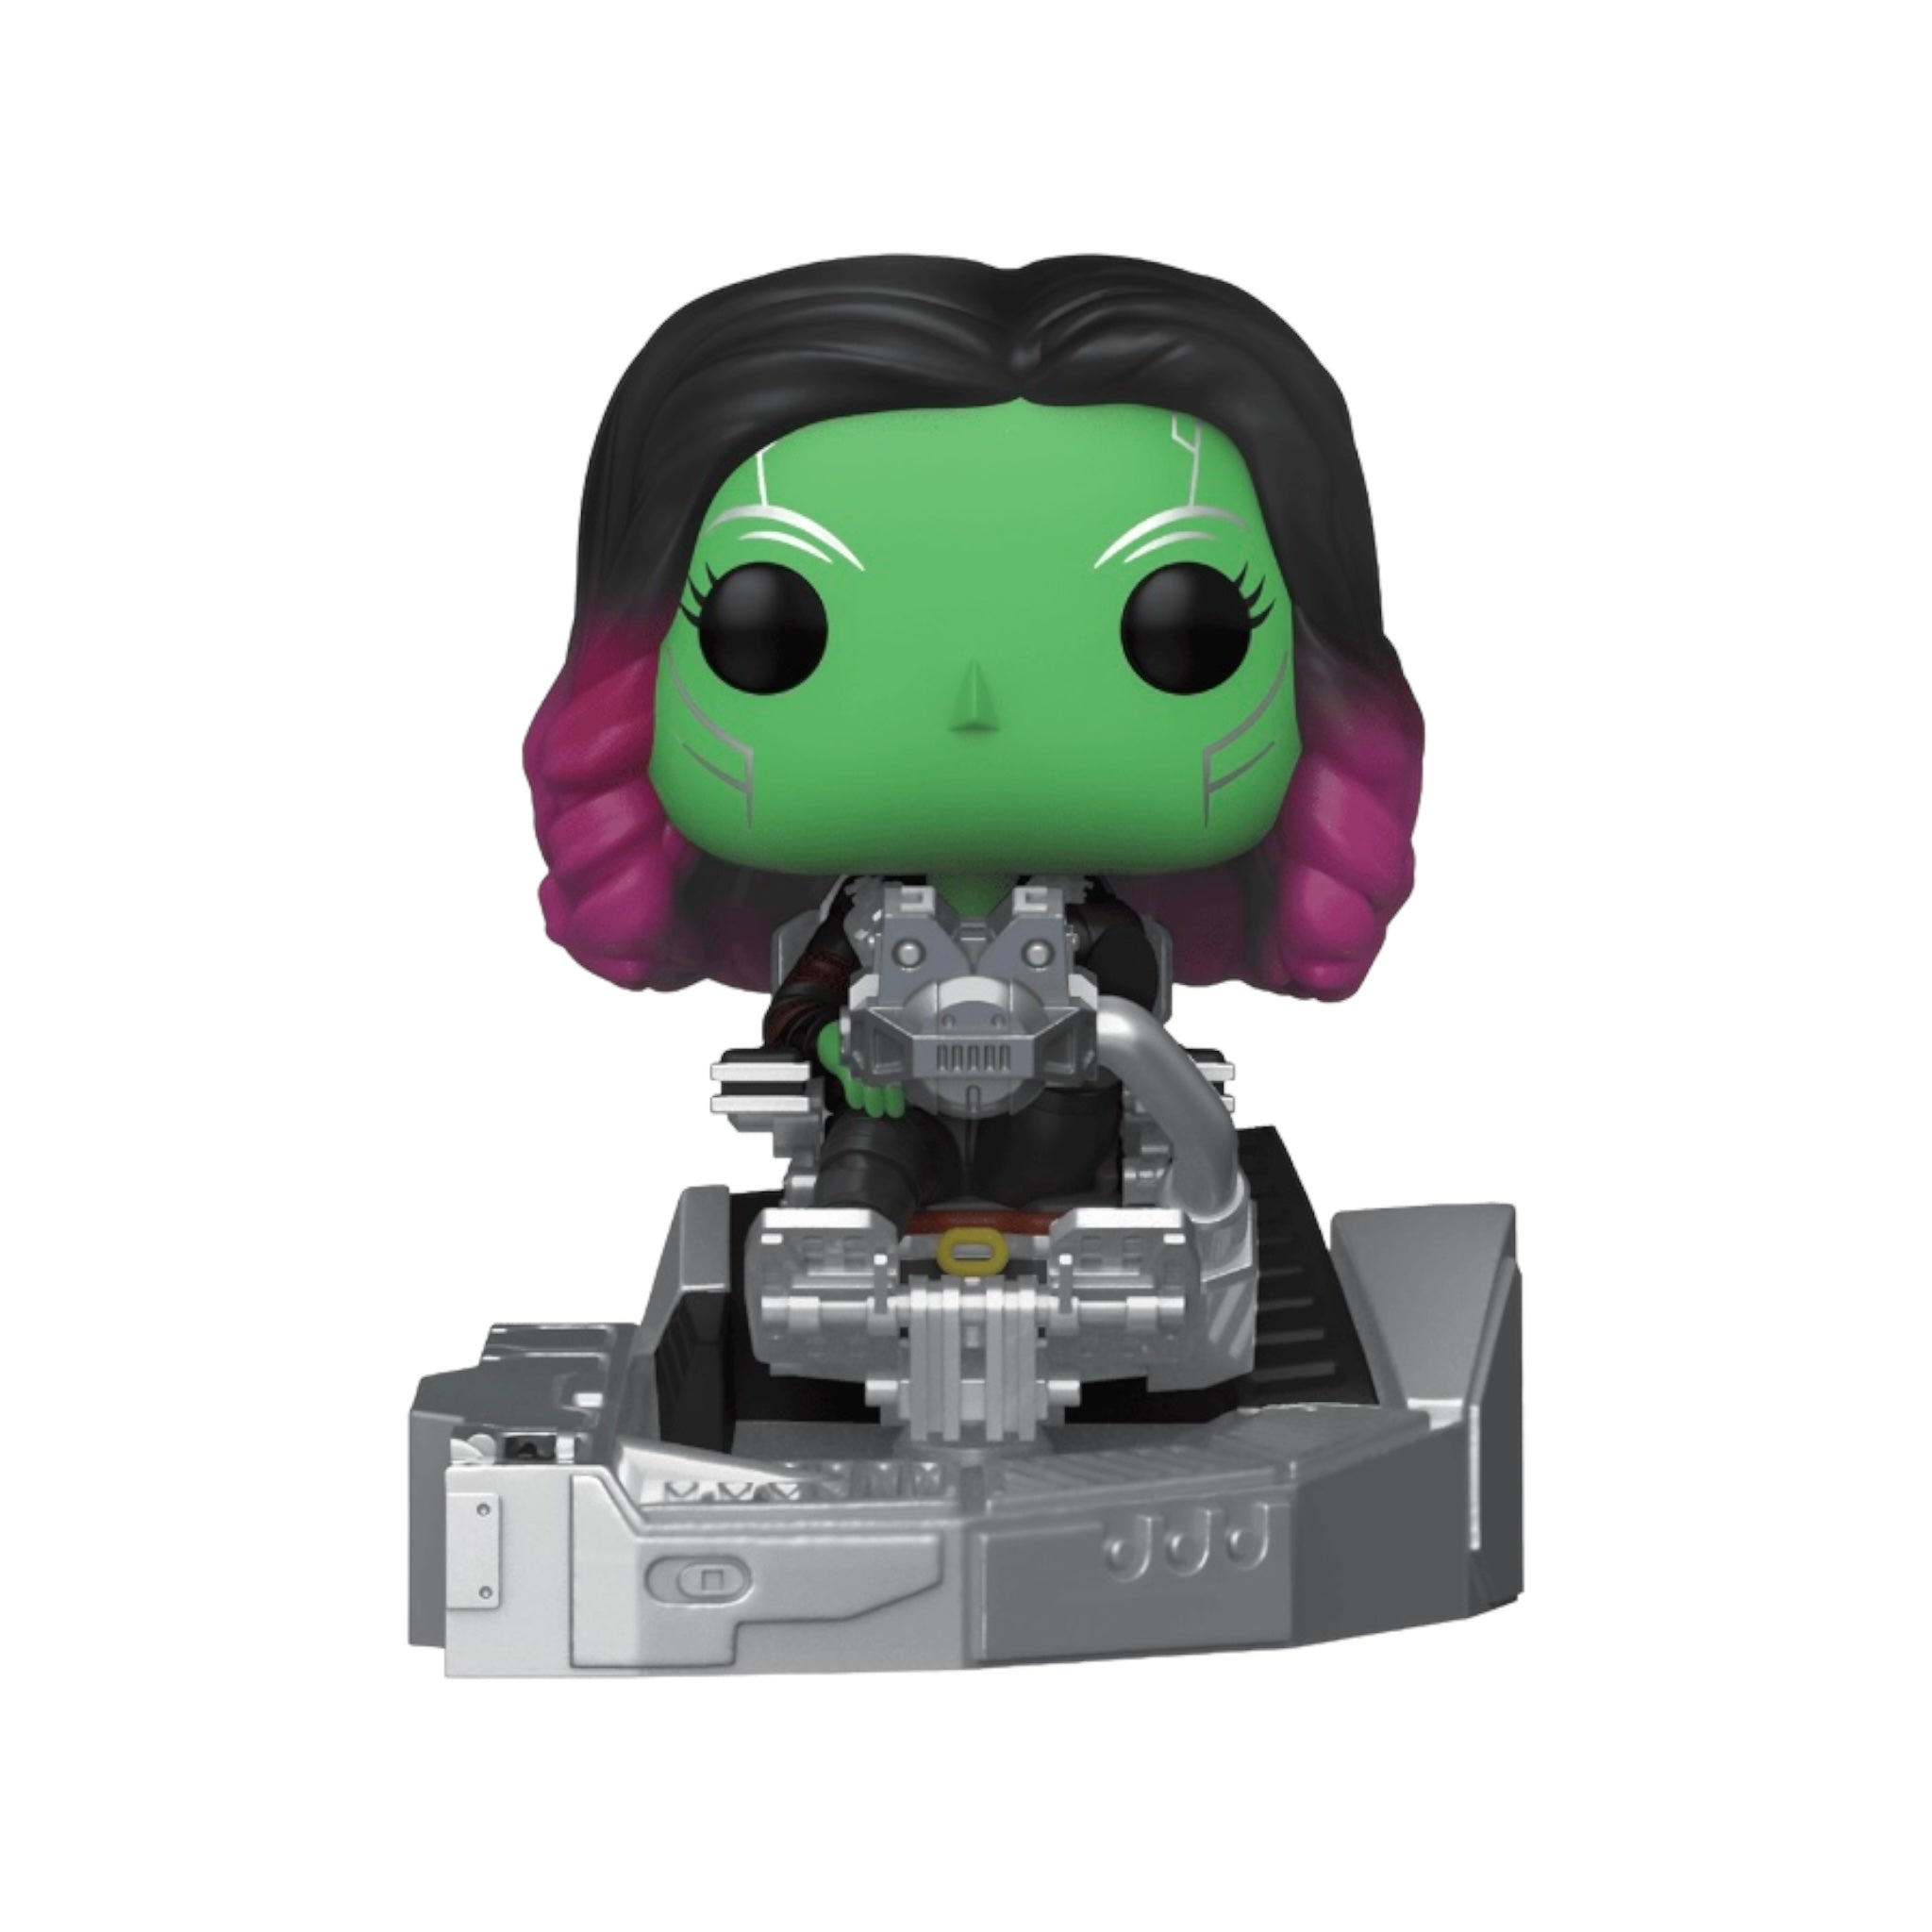 Guardians' Ship: Gamora #1024 Deluxe Funko Pop! - Avengers: Infinity War - Walmart Exclusive